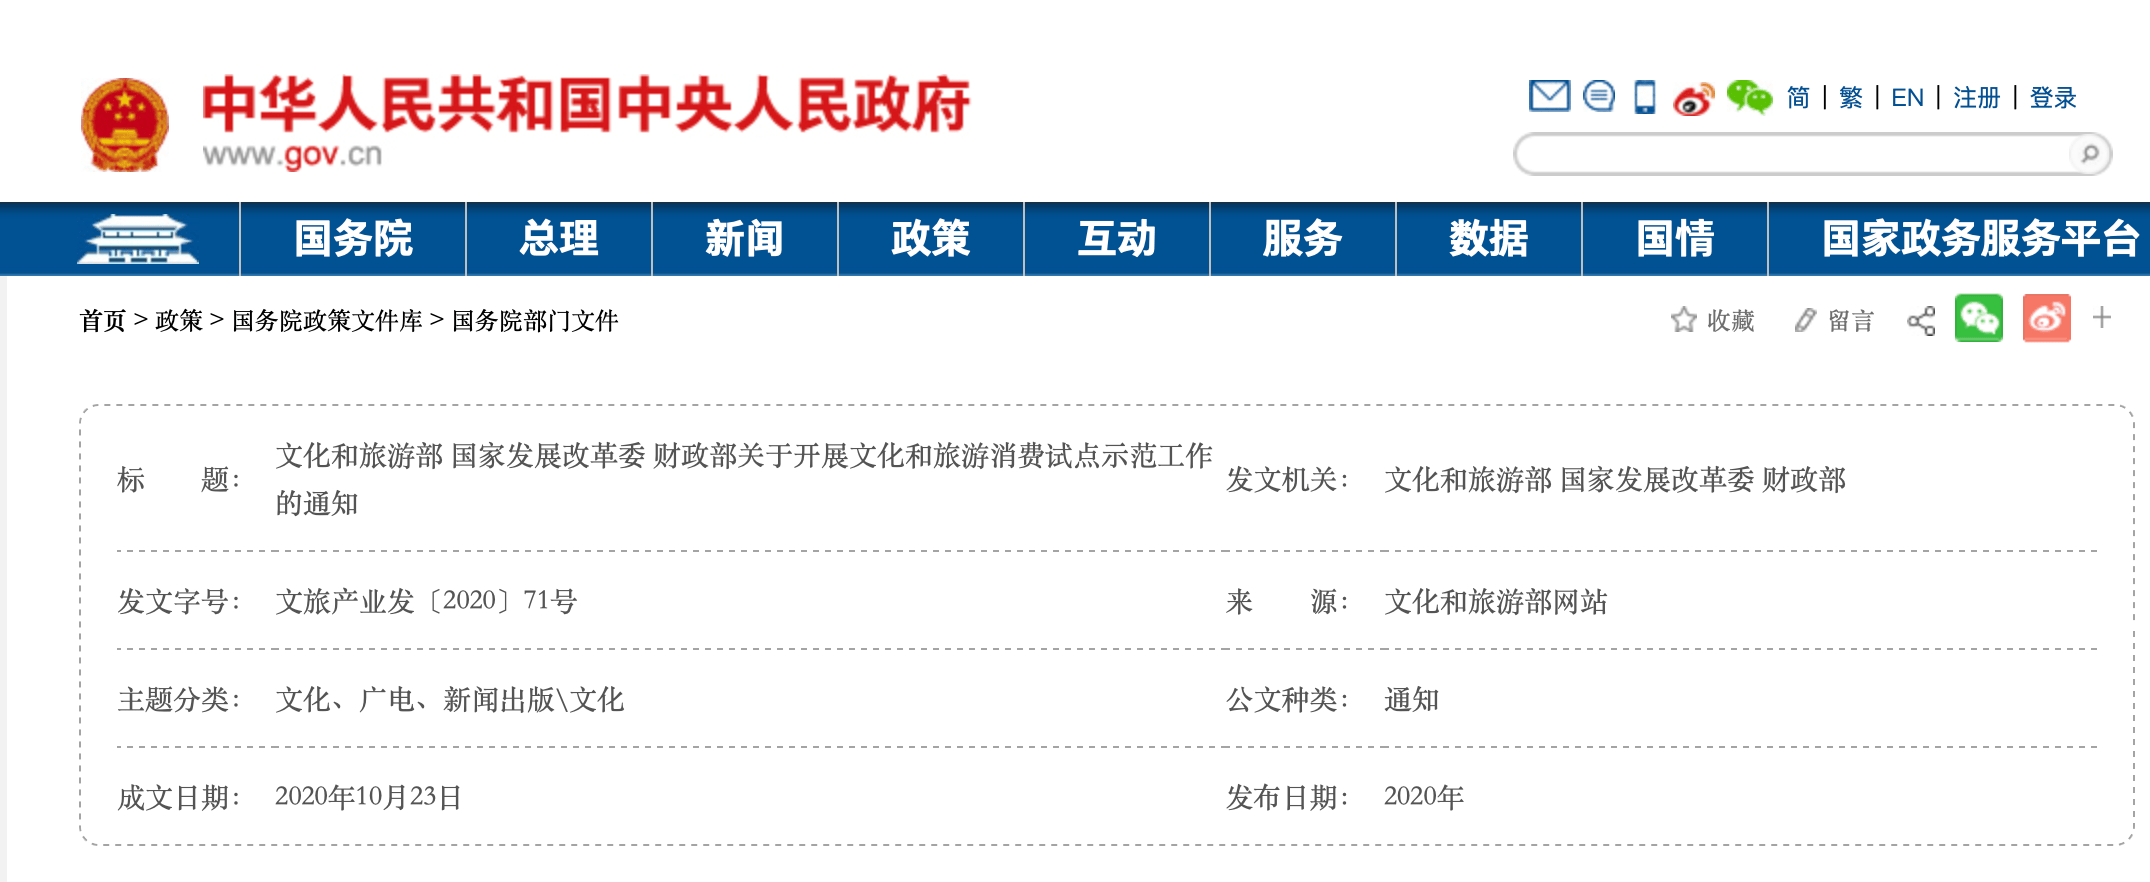 广州、深圳、佛山、惠州入选首批国家文旅消费试点城市名单